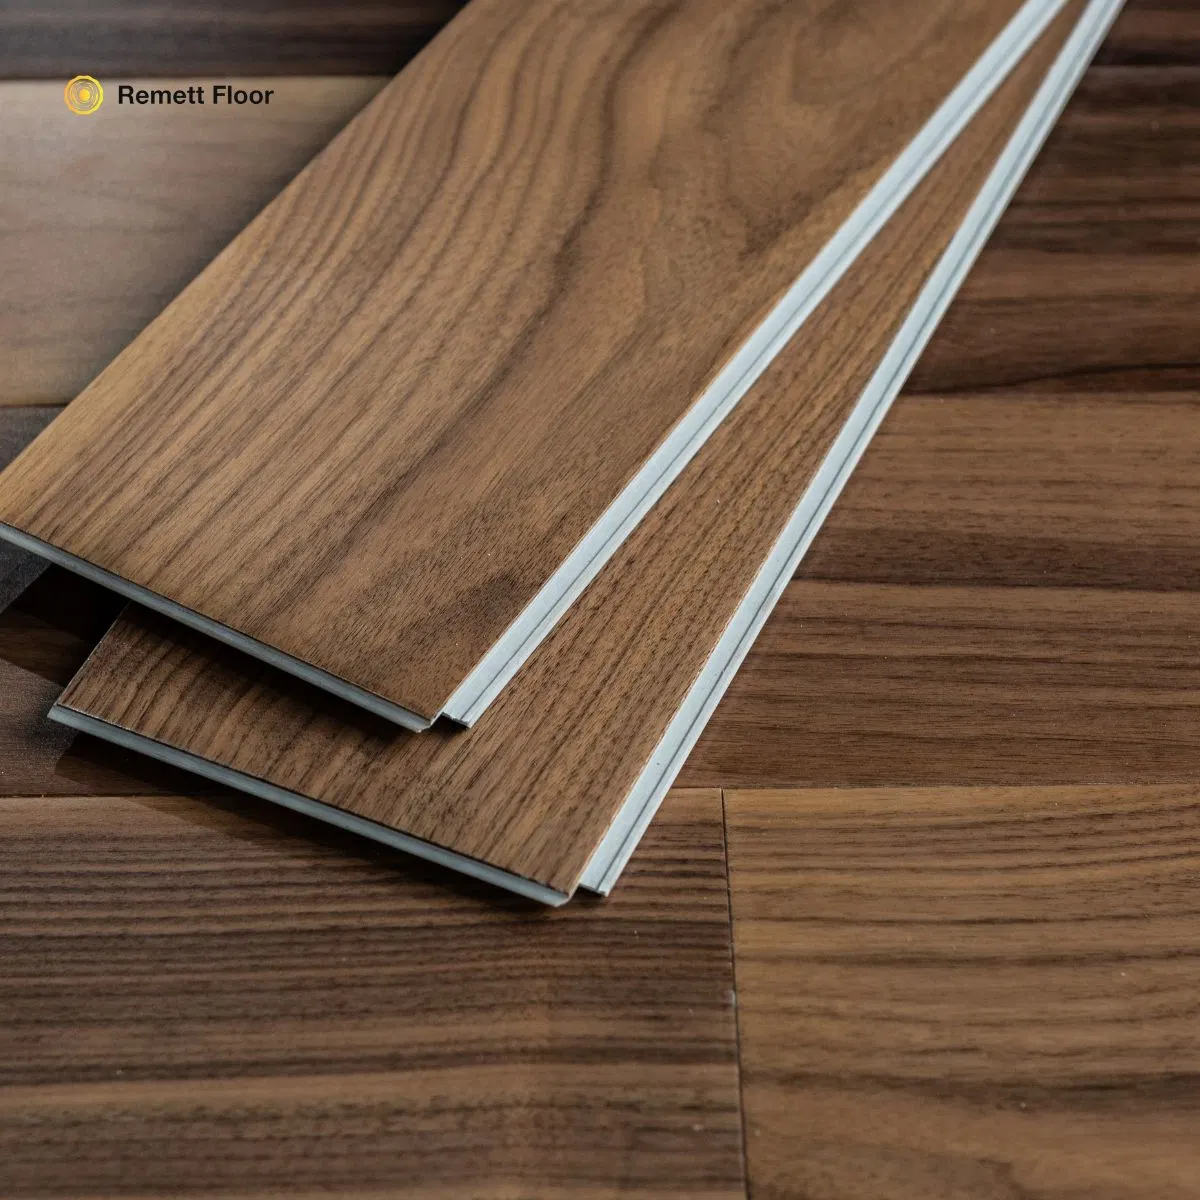 Remett Spc Rigid Core Engineered Tile Oak Timber Veneer Spc Flooring Wspc /Vspc Flooring